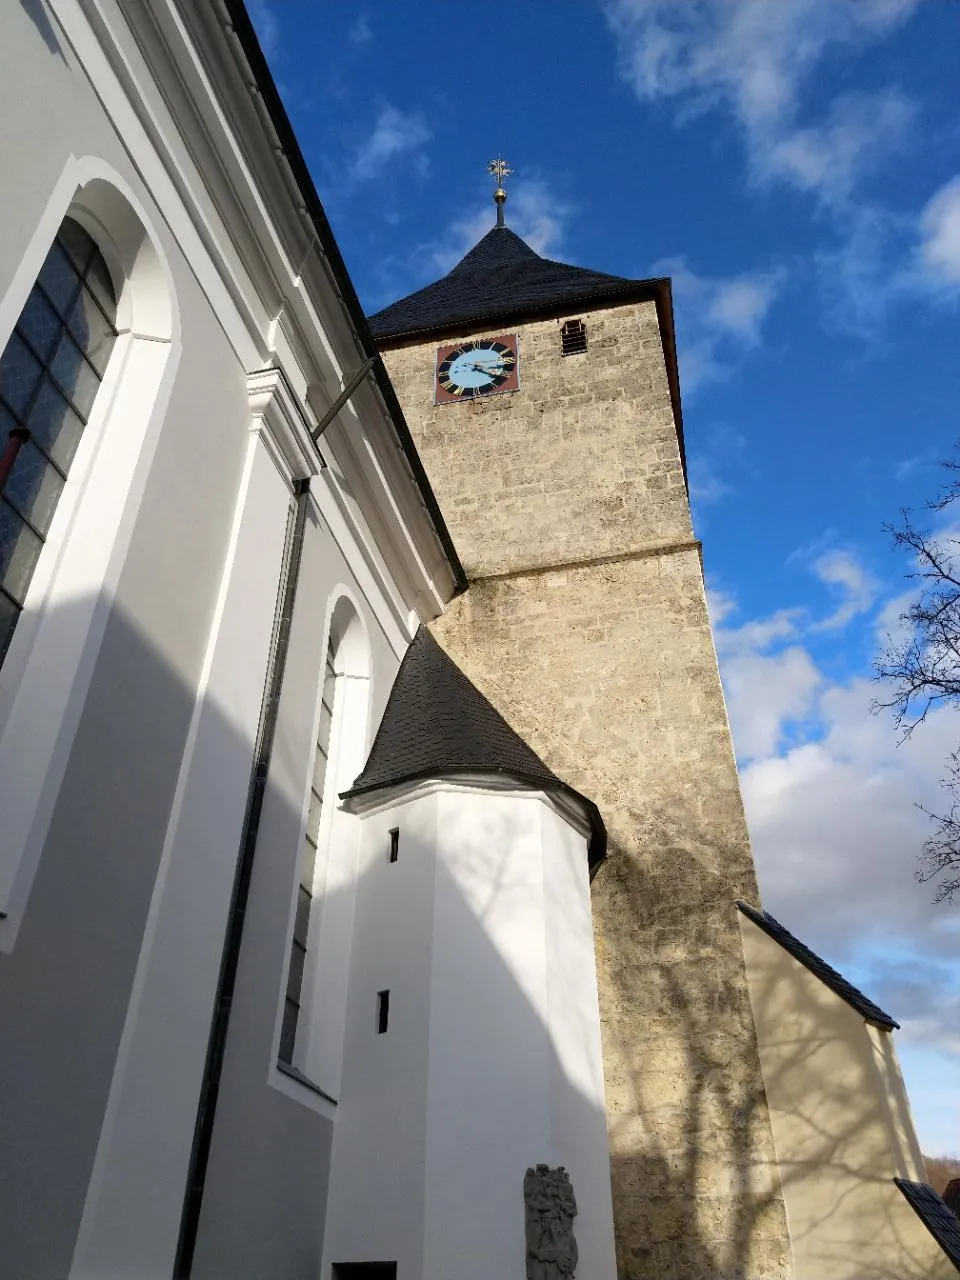 Photo showing: 1724 fertiggestellte Pfarrkirche in Deggingen mit ihrem mittelalterlichen Turm